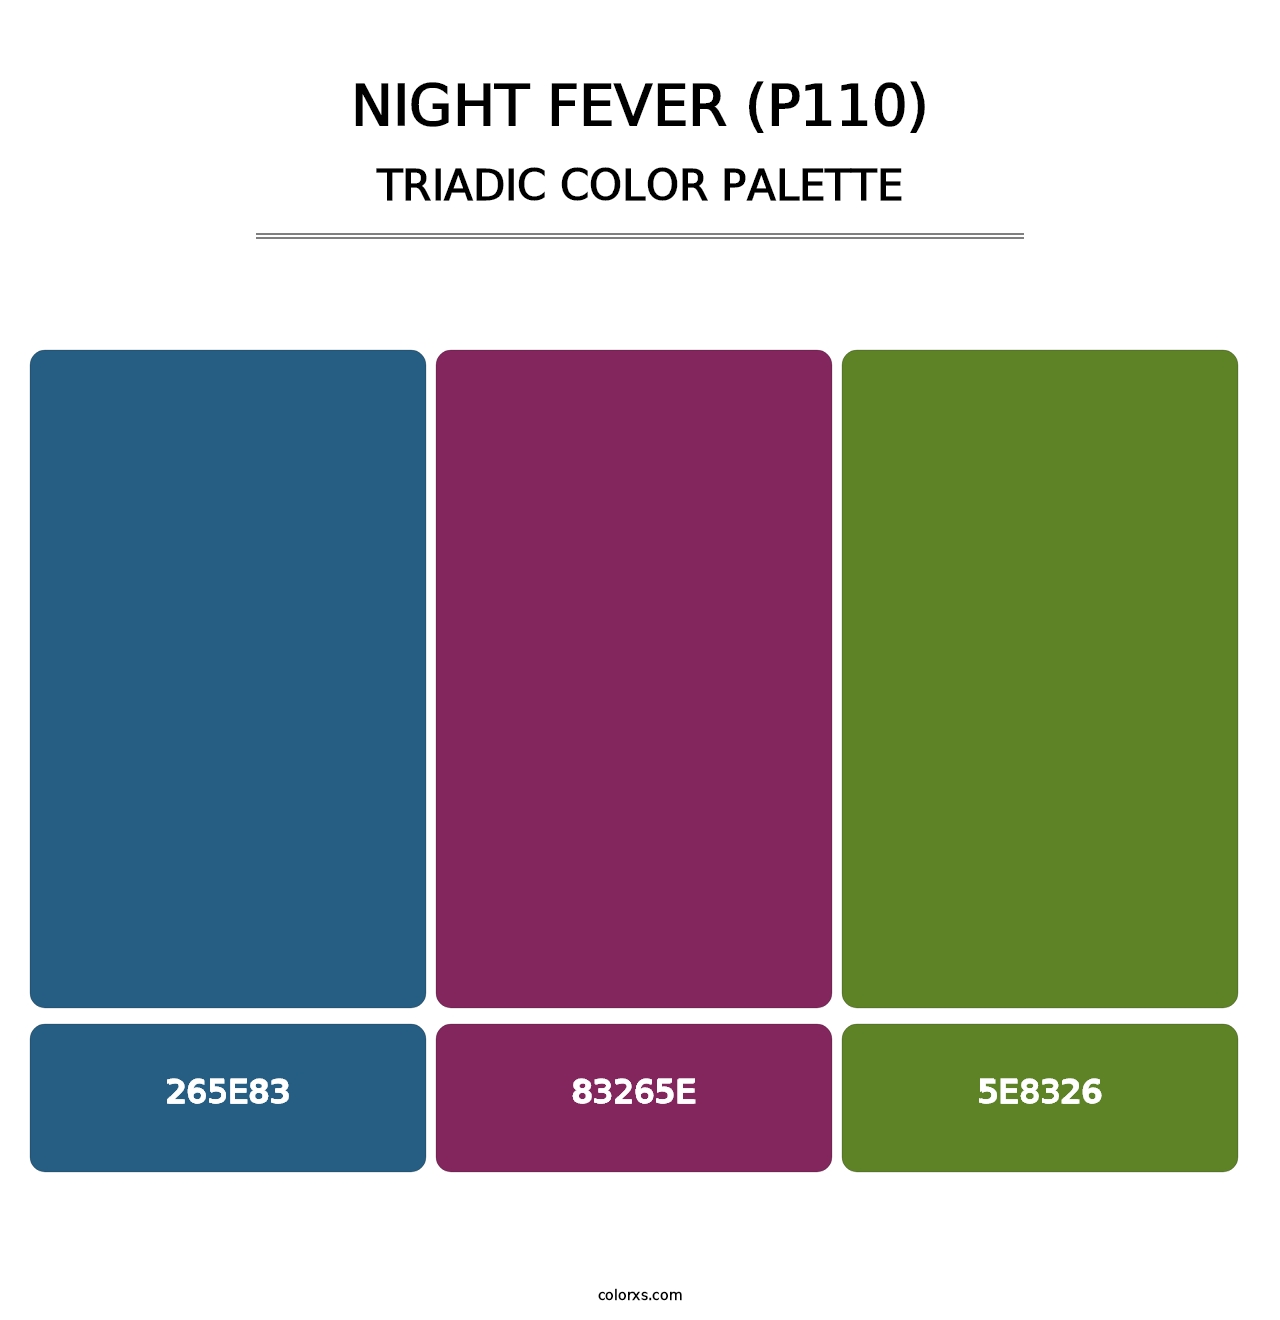 Night Fever (P110) - Triadic Color Palette